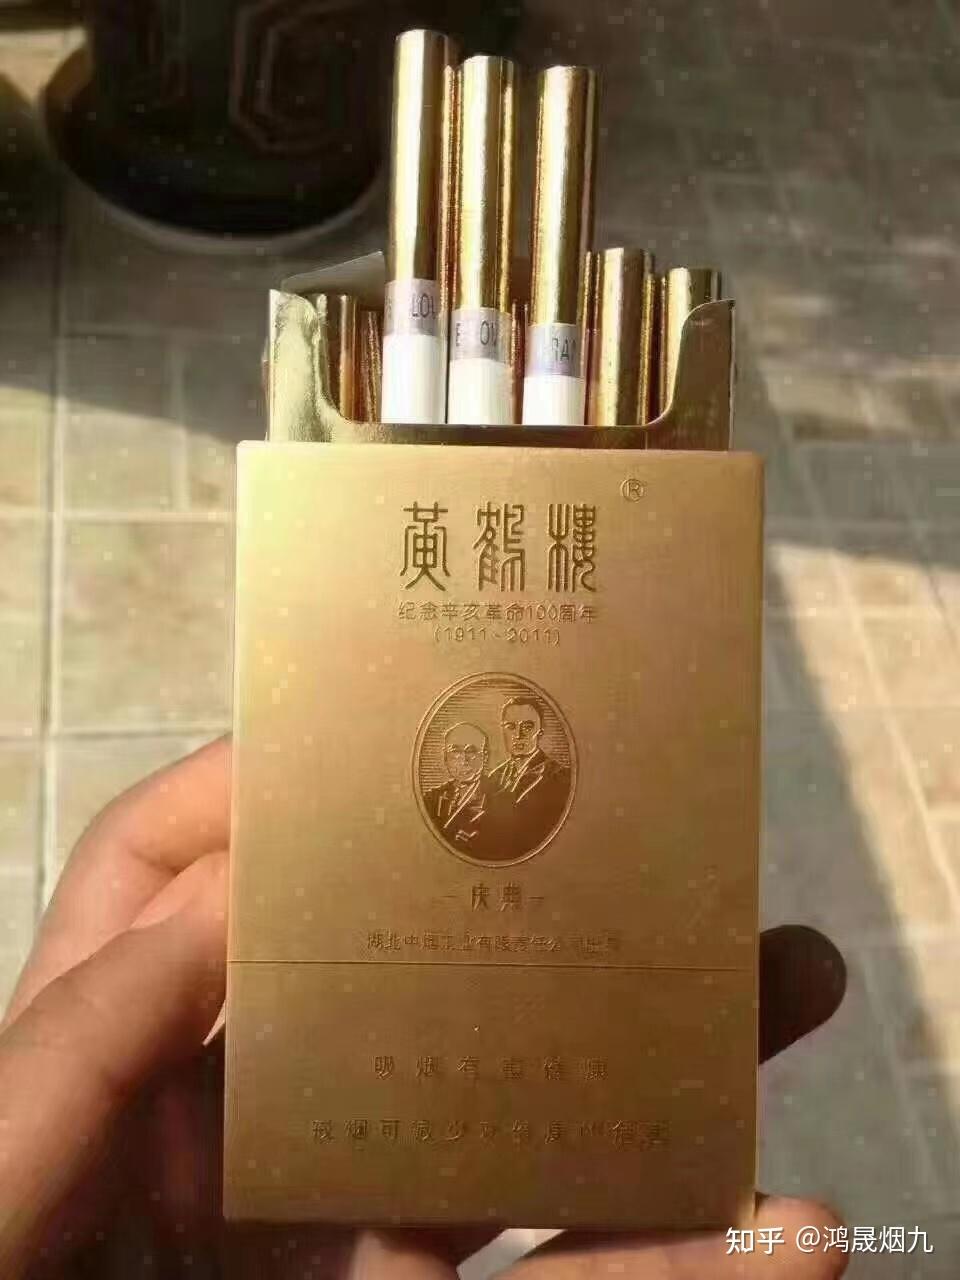 黄鹤楼2018大金砖价格参数及图片黄鹤楼最贵的香烟中国十大最贵香烟